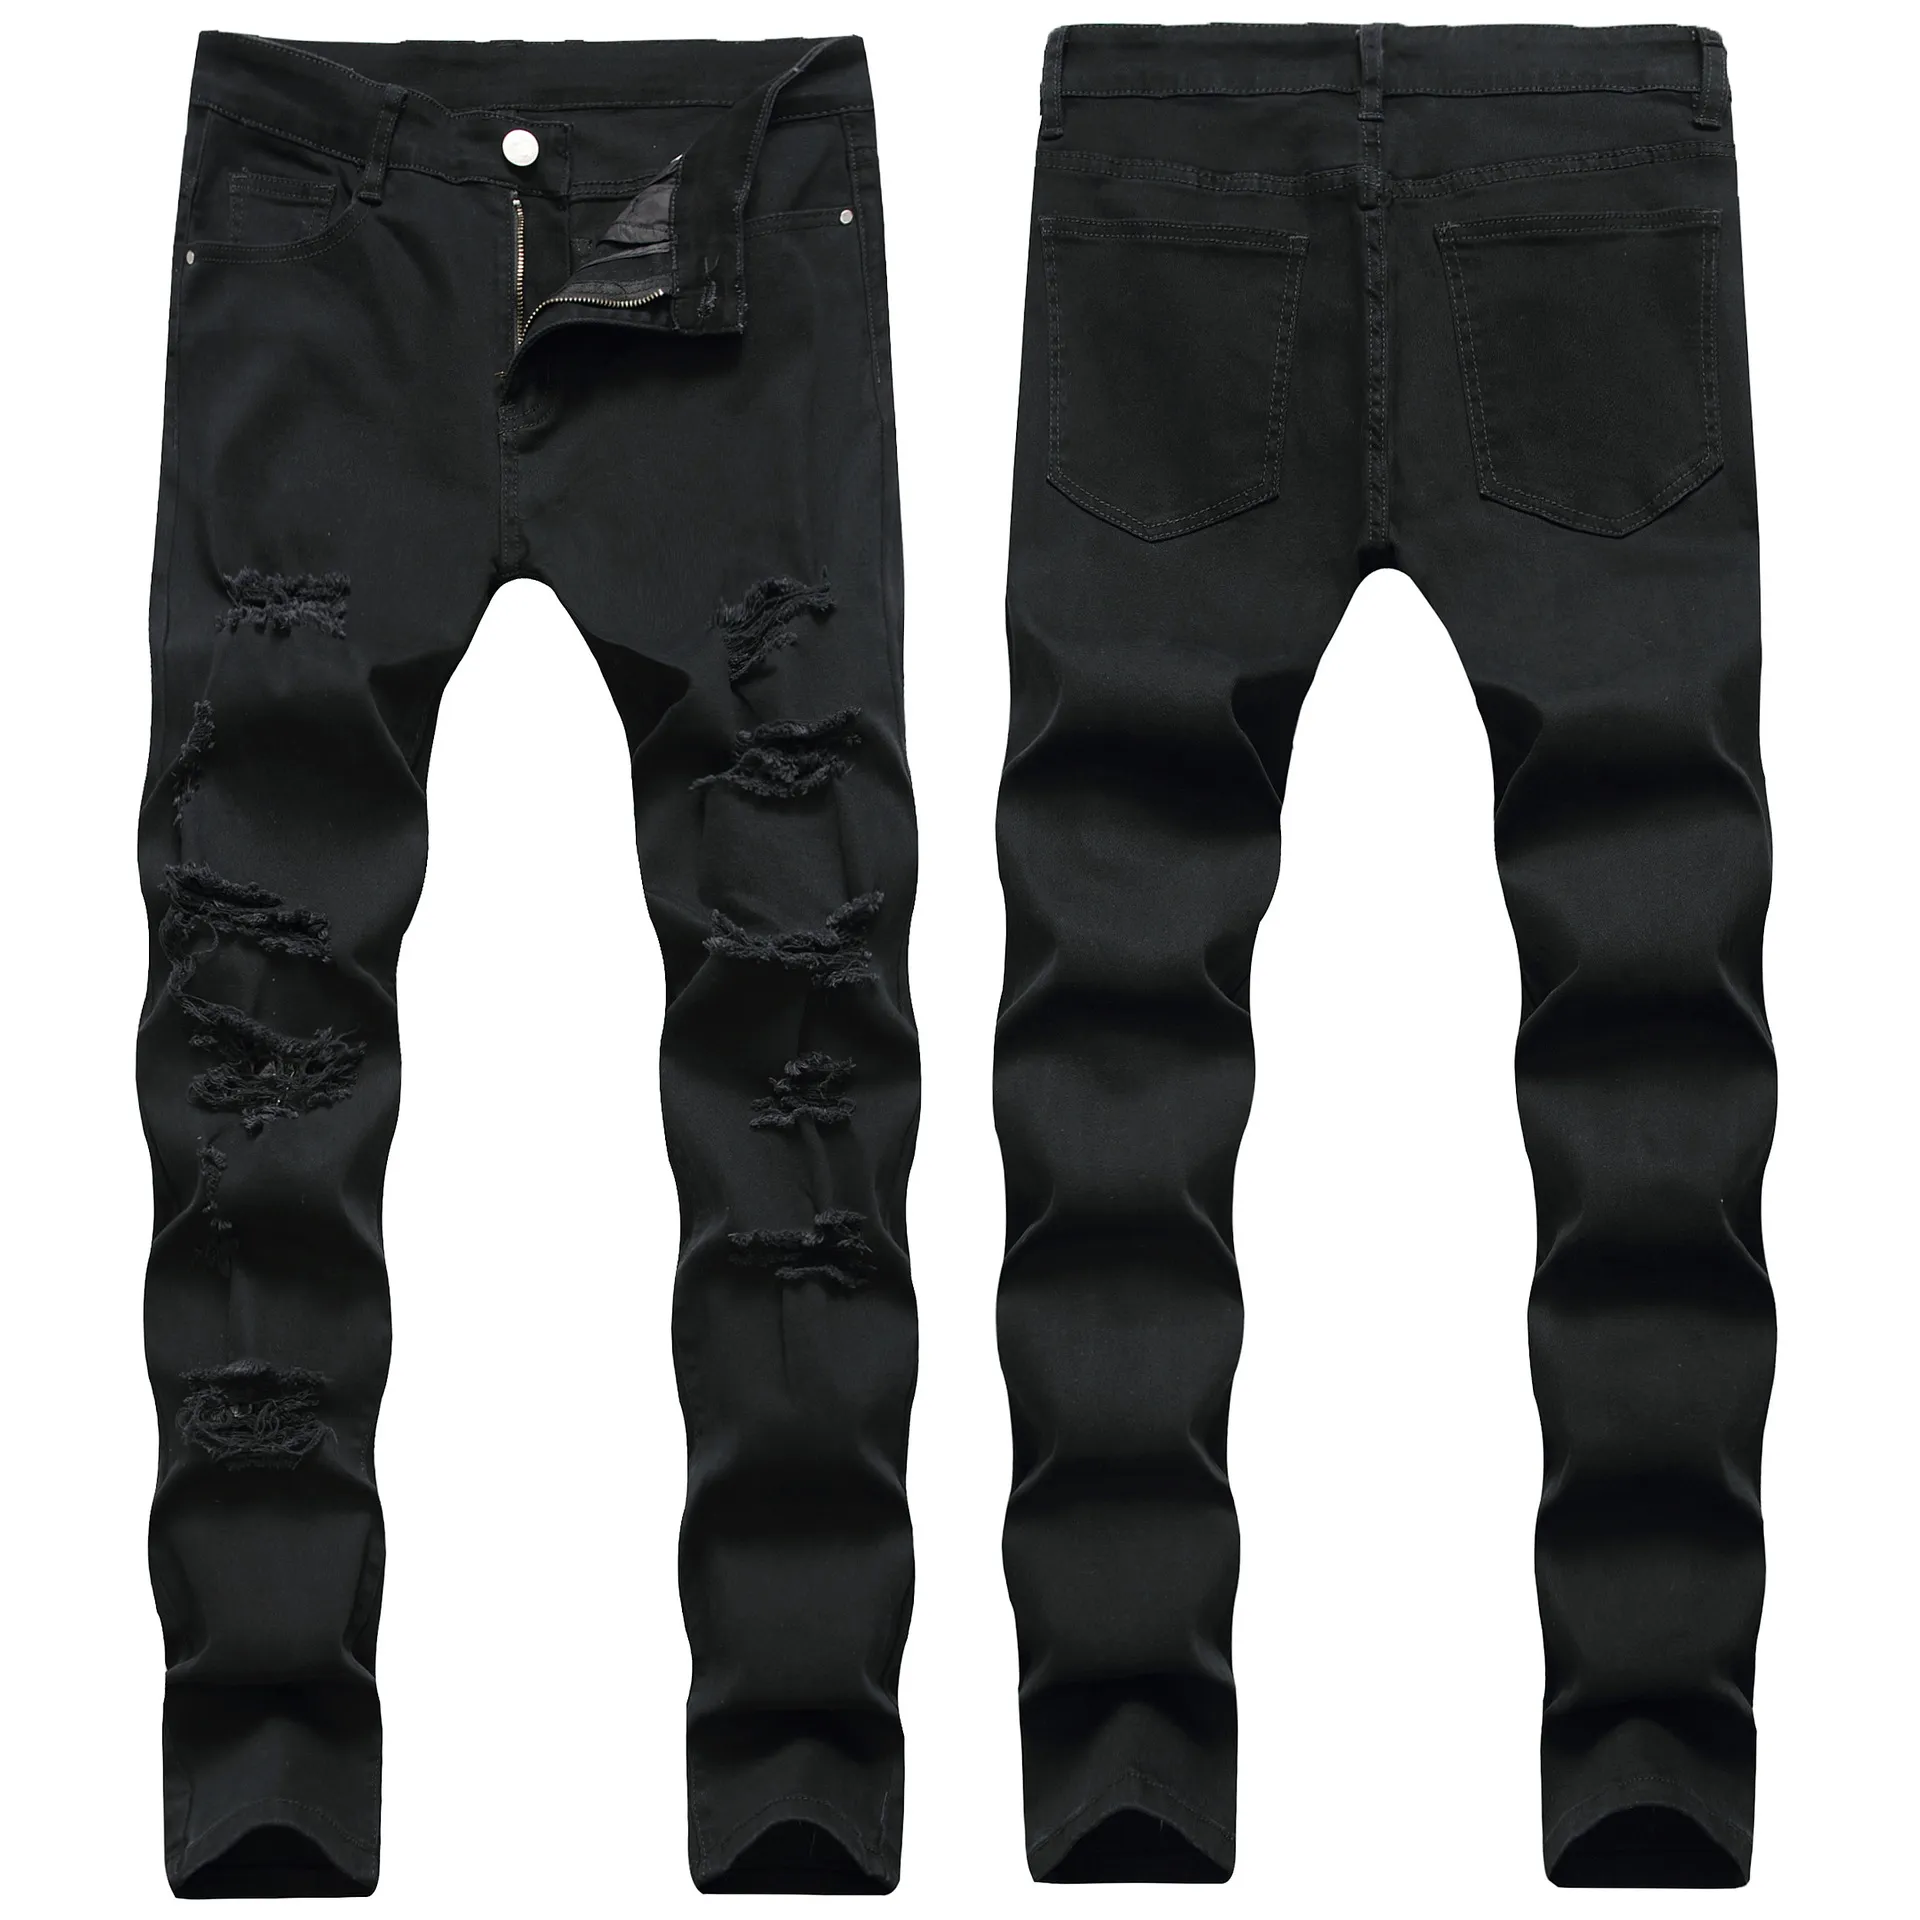 Мужские джинсы Мужская мода Стиль Мужчины Отверстие Проблемные Slim Fit Джинсовые повседневные мужские байкерские Азиатские размеры